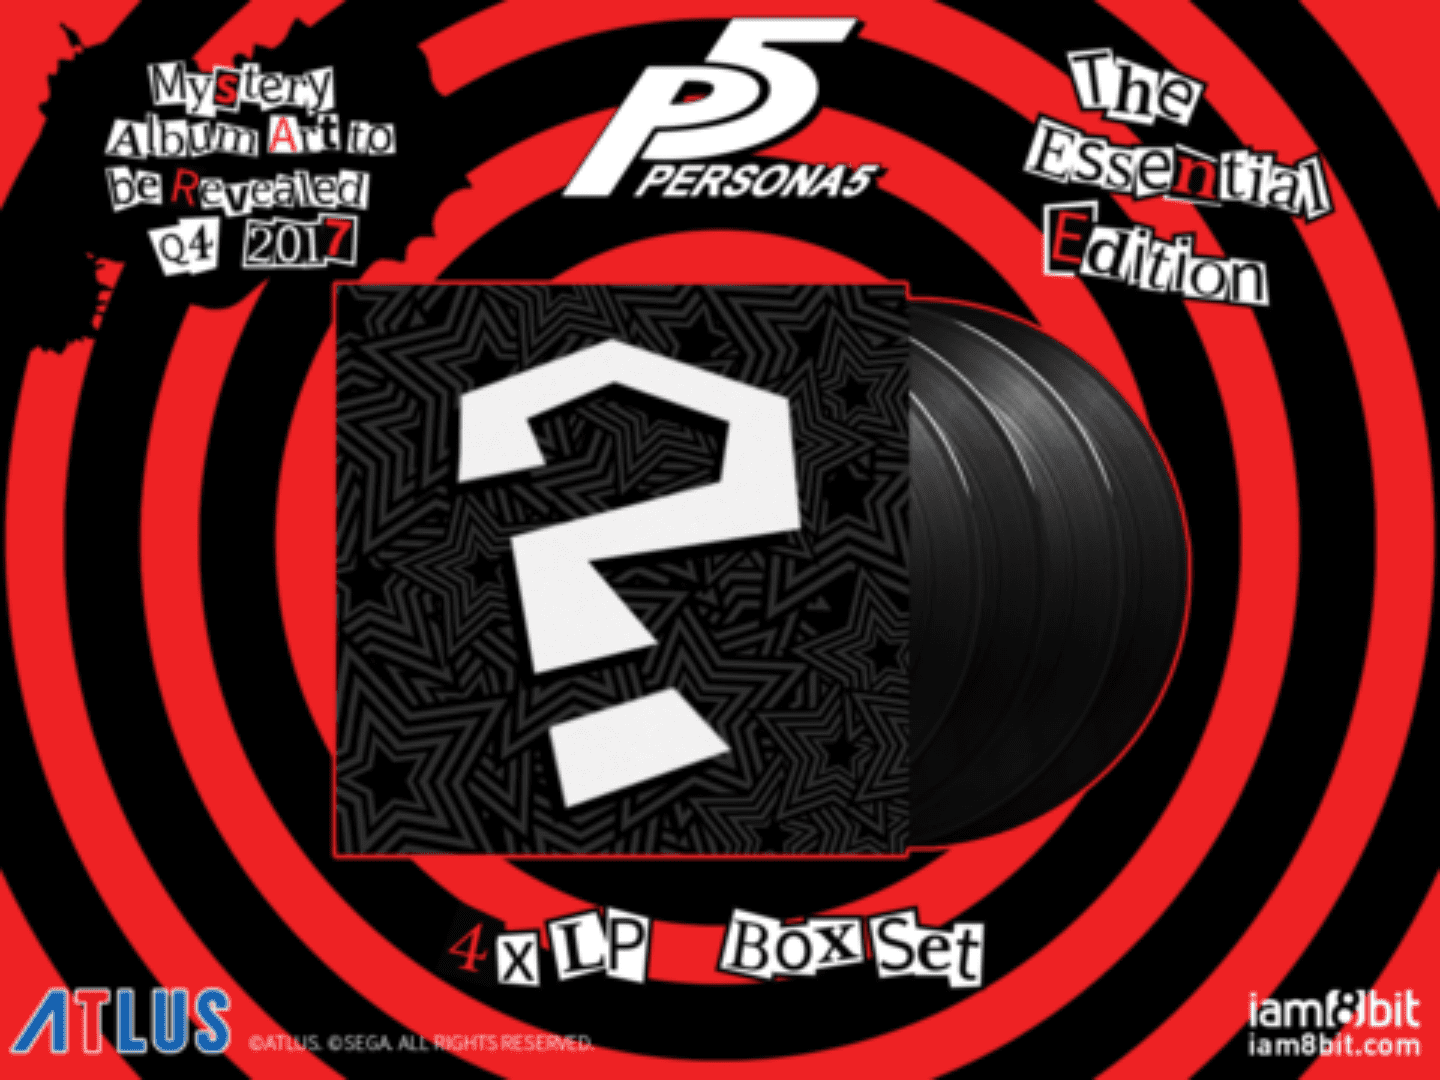 Persona 5 Vinyl Soundtracks are Coming